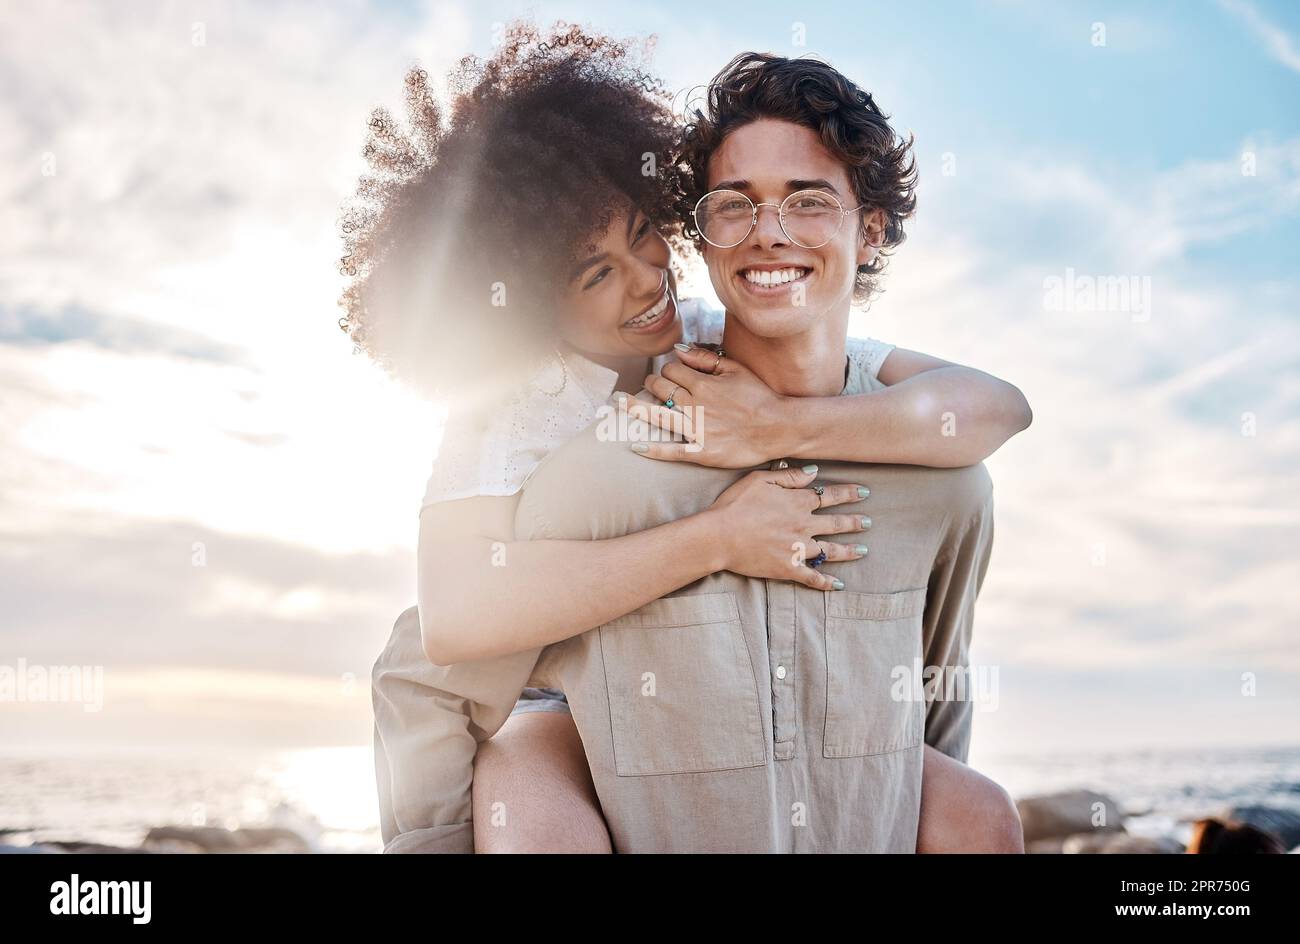 Porträt eines jungen Paares mit gemischten Rassen, das einen Tag am Strand genießt und glücklich und verliebt aussah. Porträt eines jungen Paares mit gemischten Rassen, das einen Tag am Strand genießt und glücklich und verliebt aussah. Stockfoto